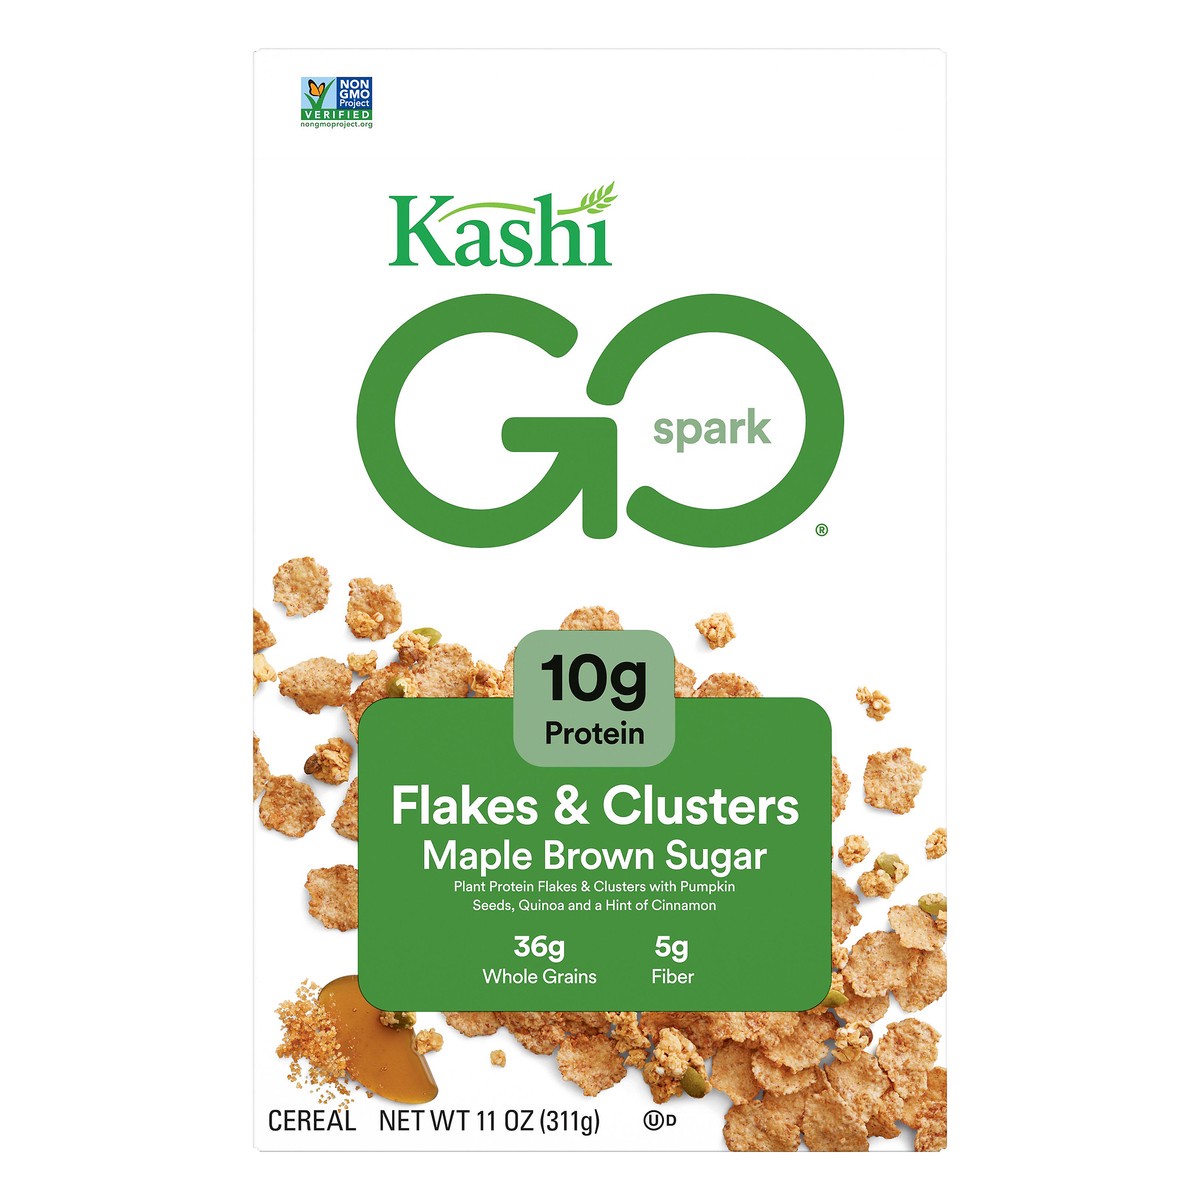 slide 1 of 11, Kashi Go Spark Flakes & Clusters Maple Brown Sugar Cereal 11 oz, 11 oz